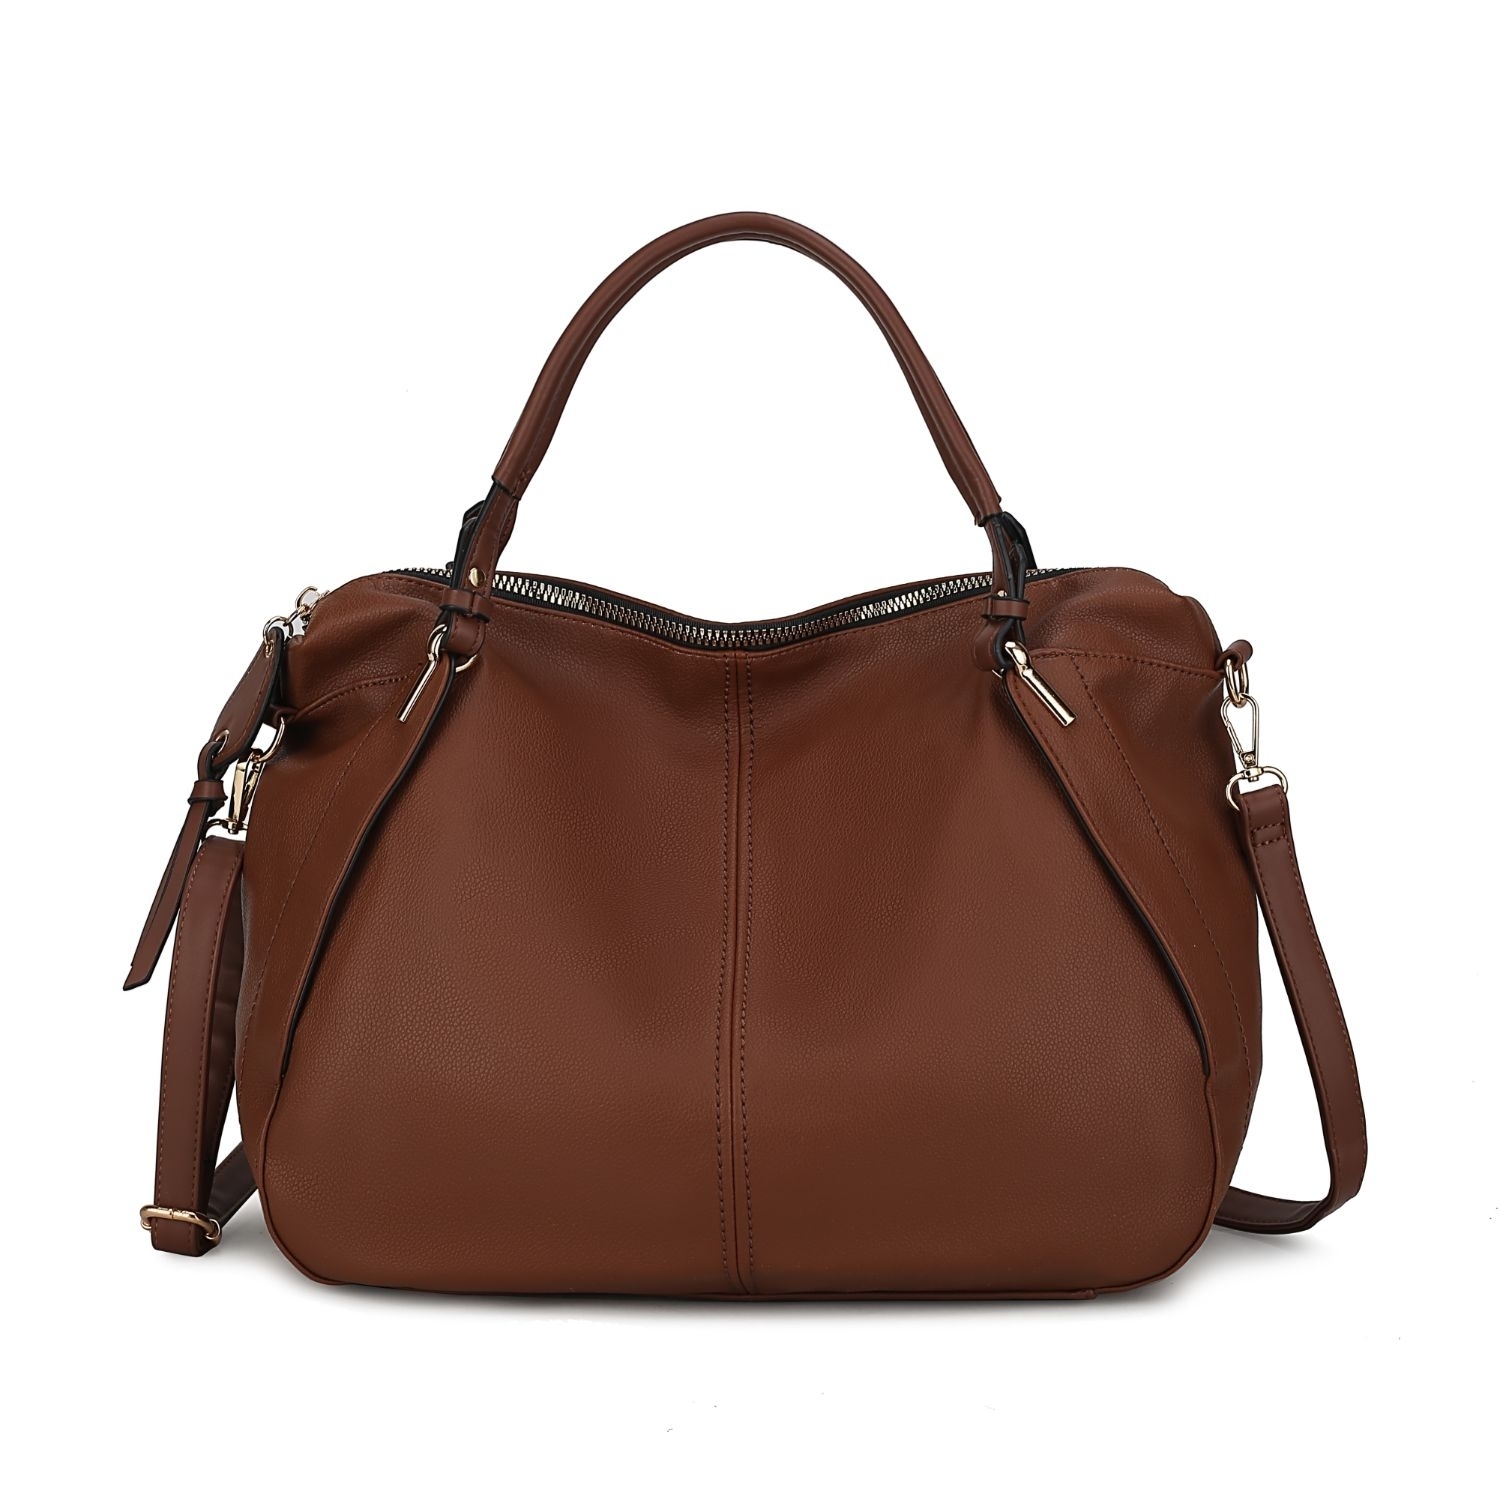 MKF Collection Fiorella Weekender Handbag By Mia K - Cognac